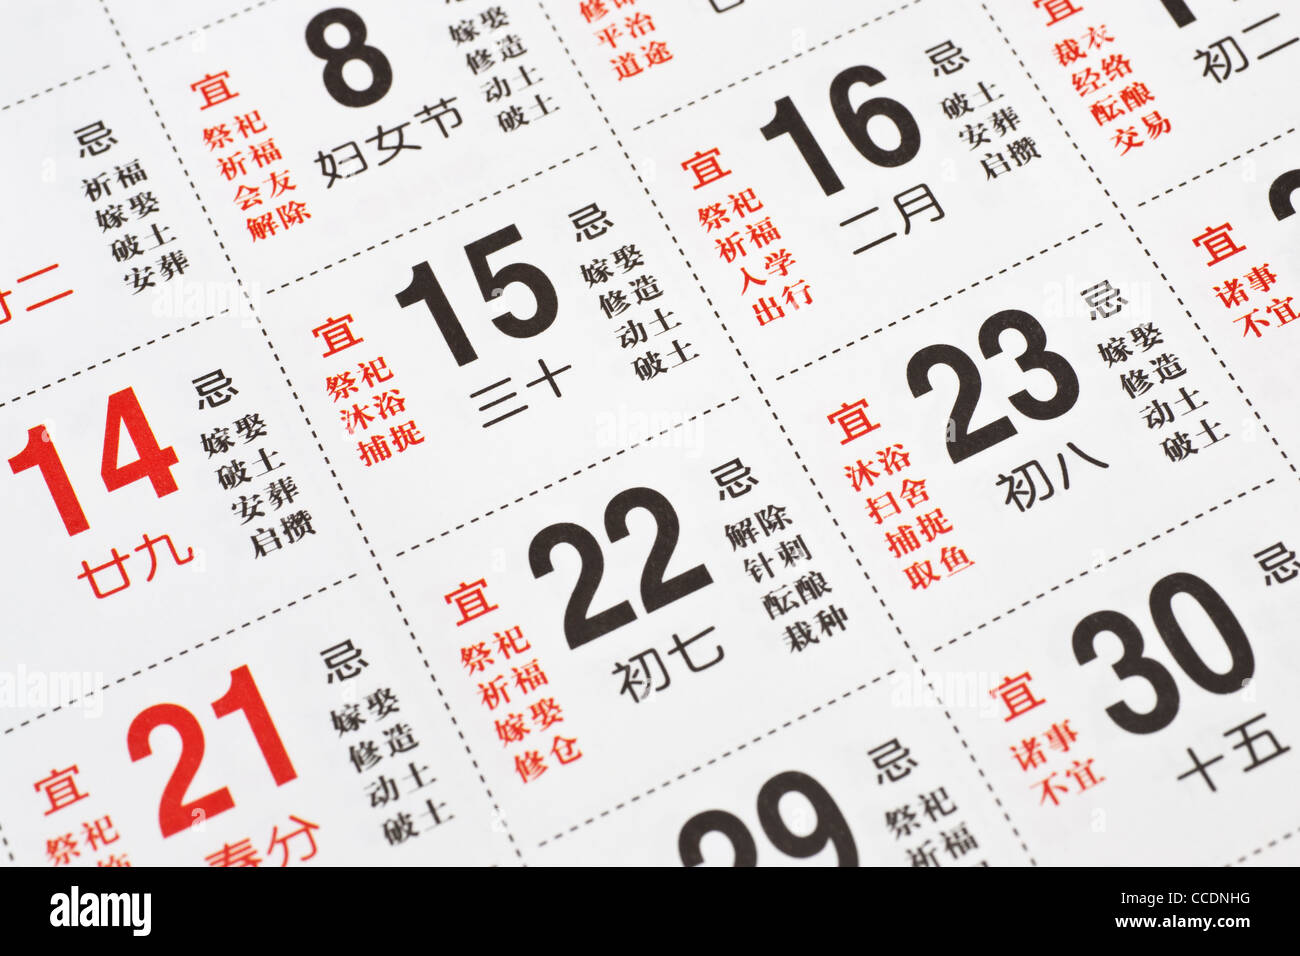 Detailansicht eines Kalenders mit chinesischen Schriftzeichen | Detail photo of a calendar with Chinese characters Stock Photo